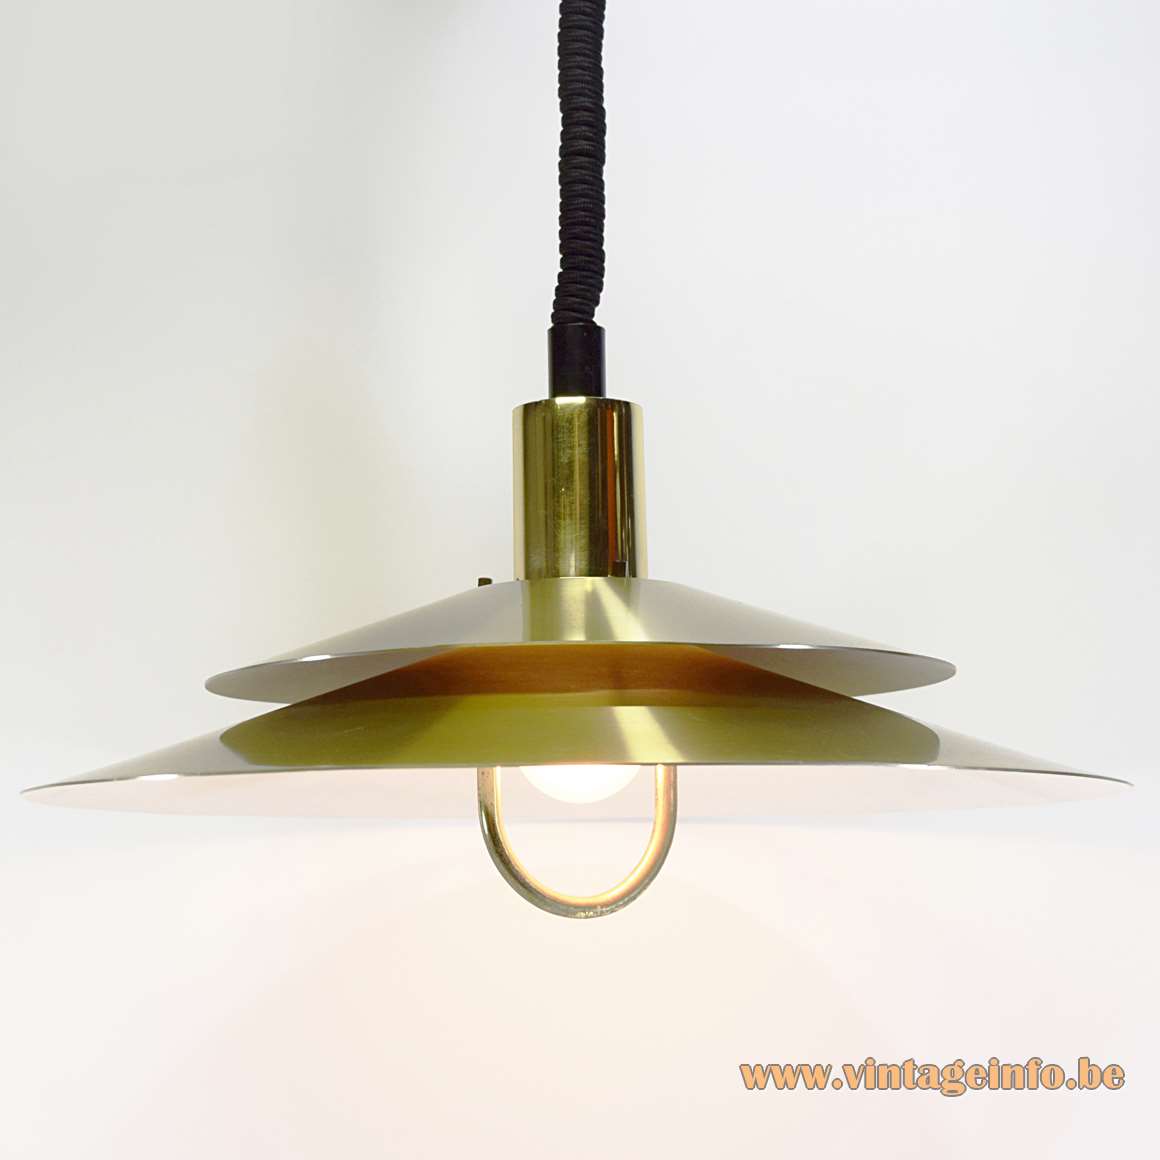 Scandinavian aluminium pendant lamp 2 discs lampshade handle rise & fall mechanism 1970s Lyskaer Belysning Denmark